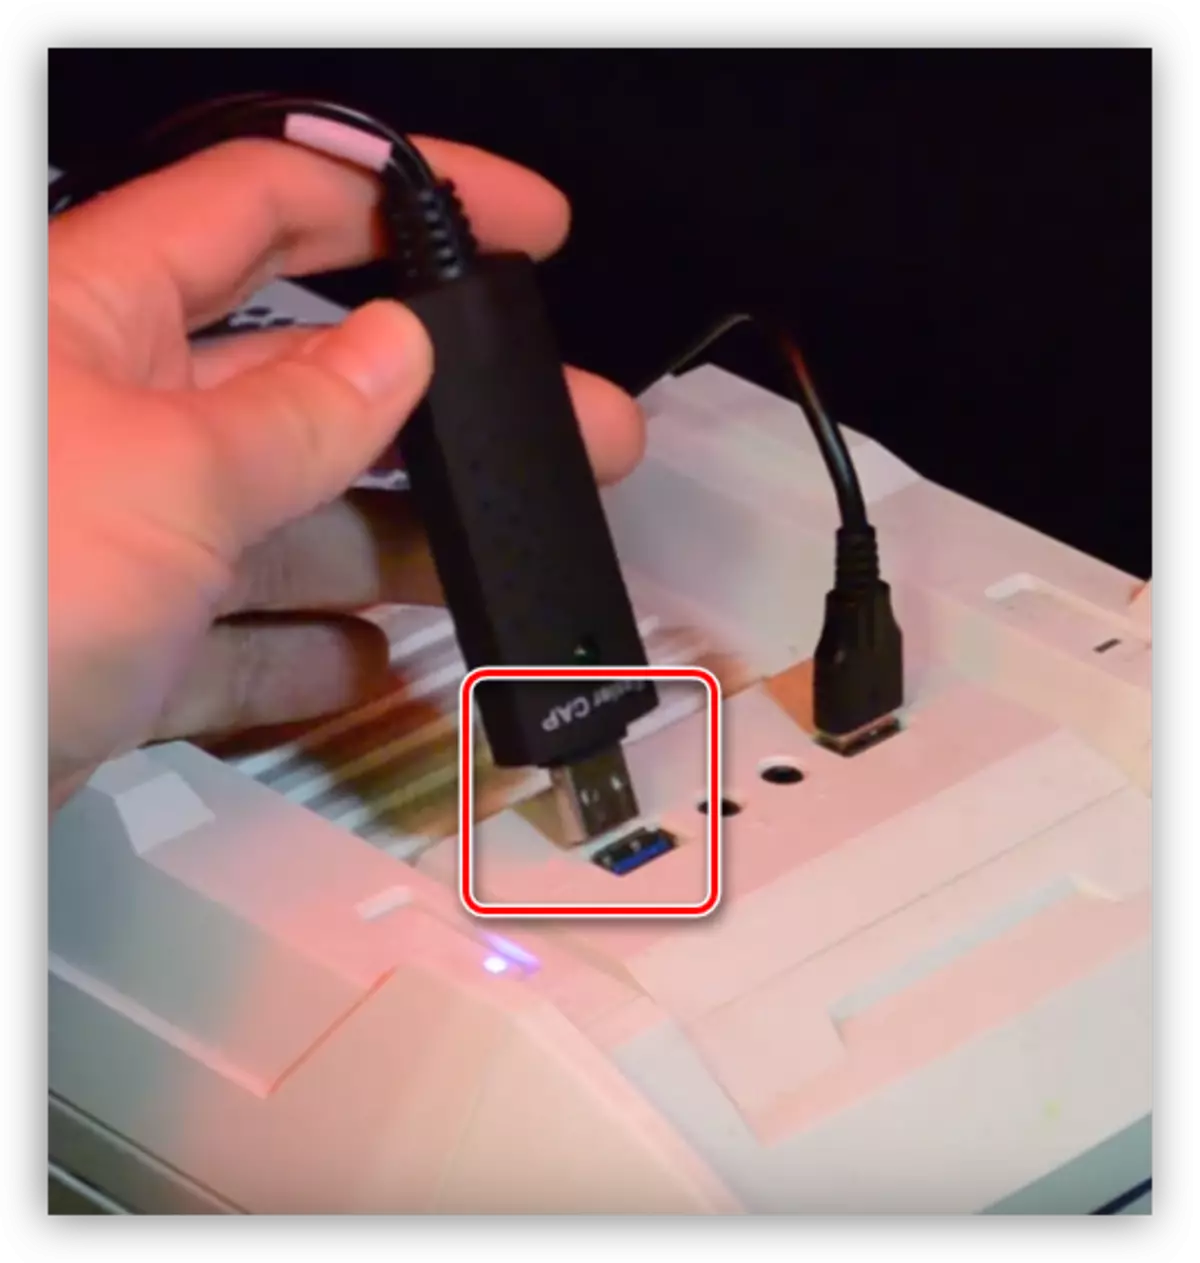 Povezivanje uređaja za snimanje videozapisa na USB priključak računala